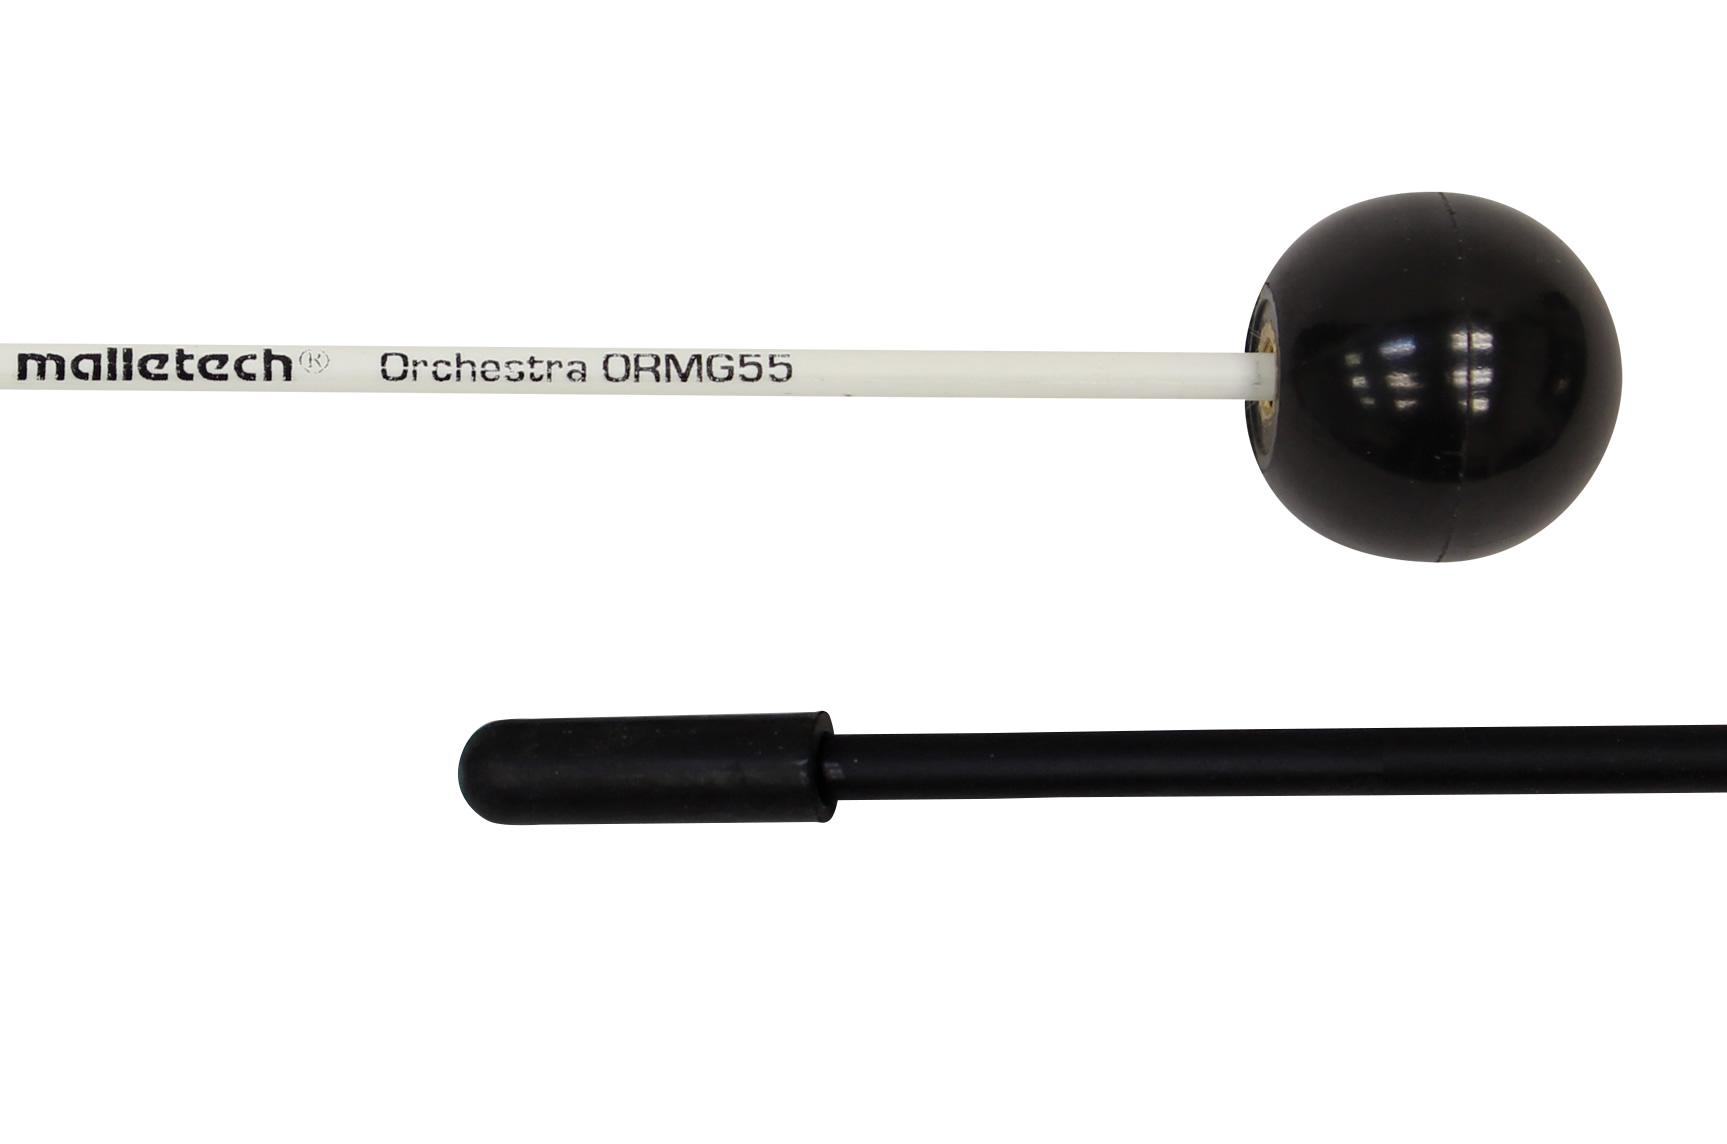 malletech ORMG55 ブラックプラスティックボール／オーケストラ シリーズ グロッケンマレット マレテック